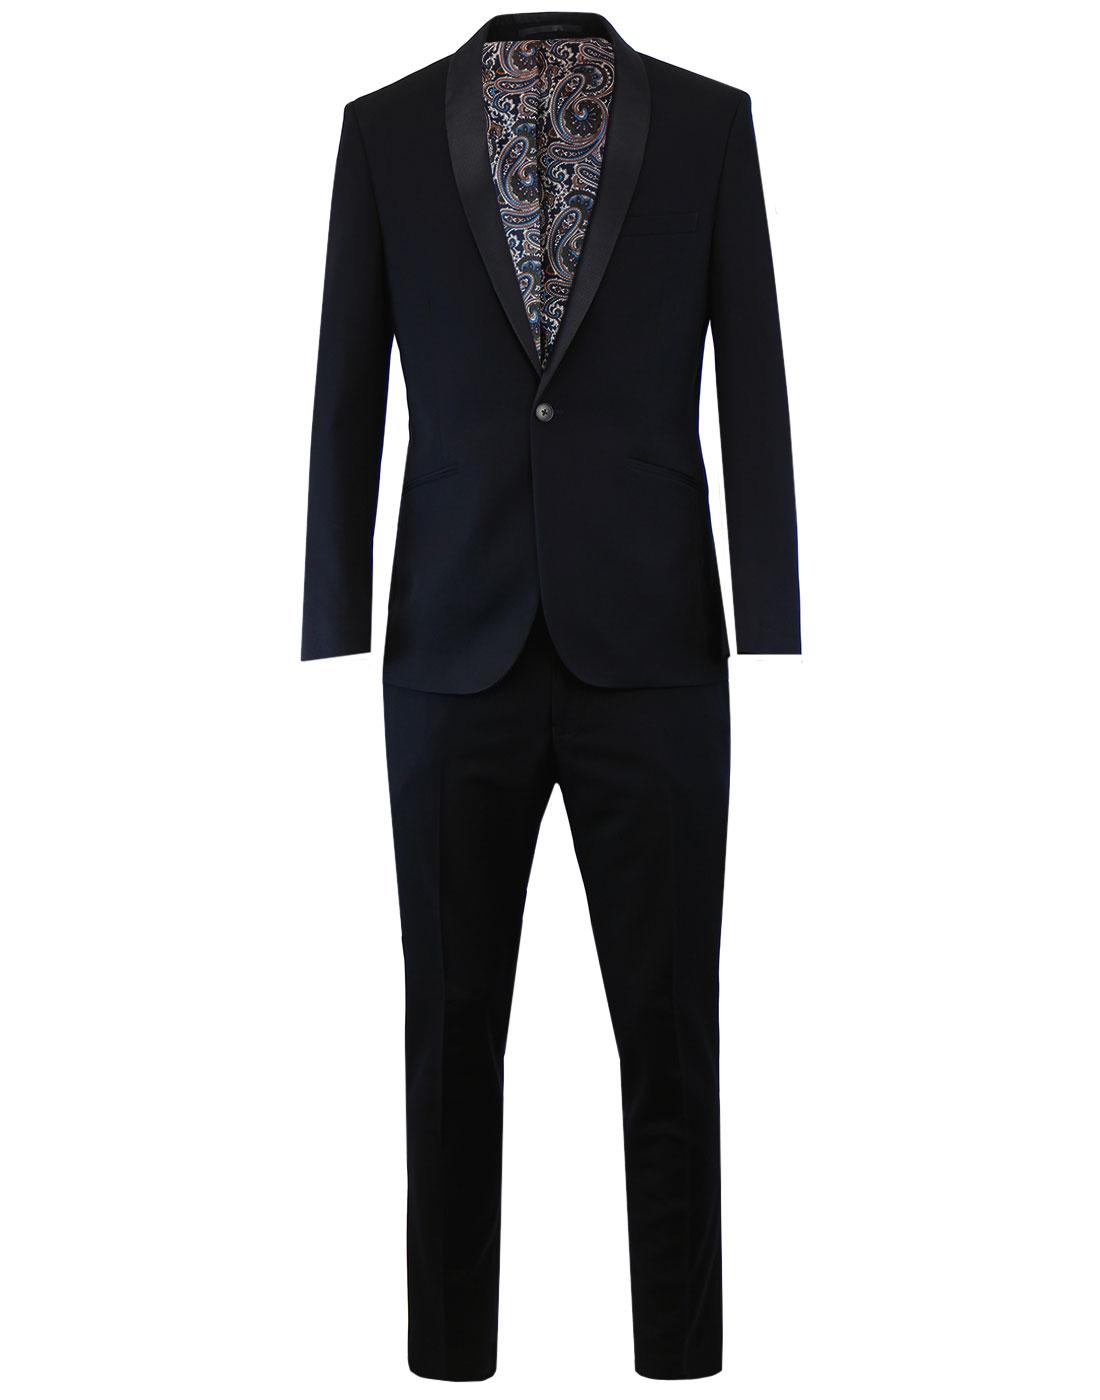 Men's Retro Shawl Collar Dinner/Prom Suit